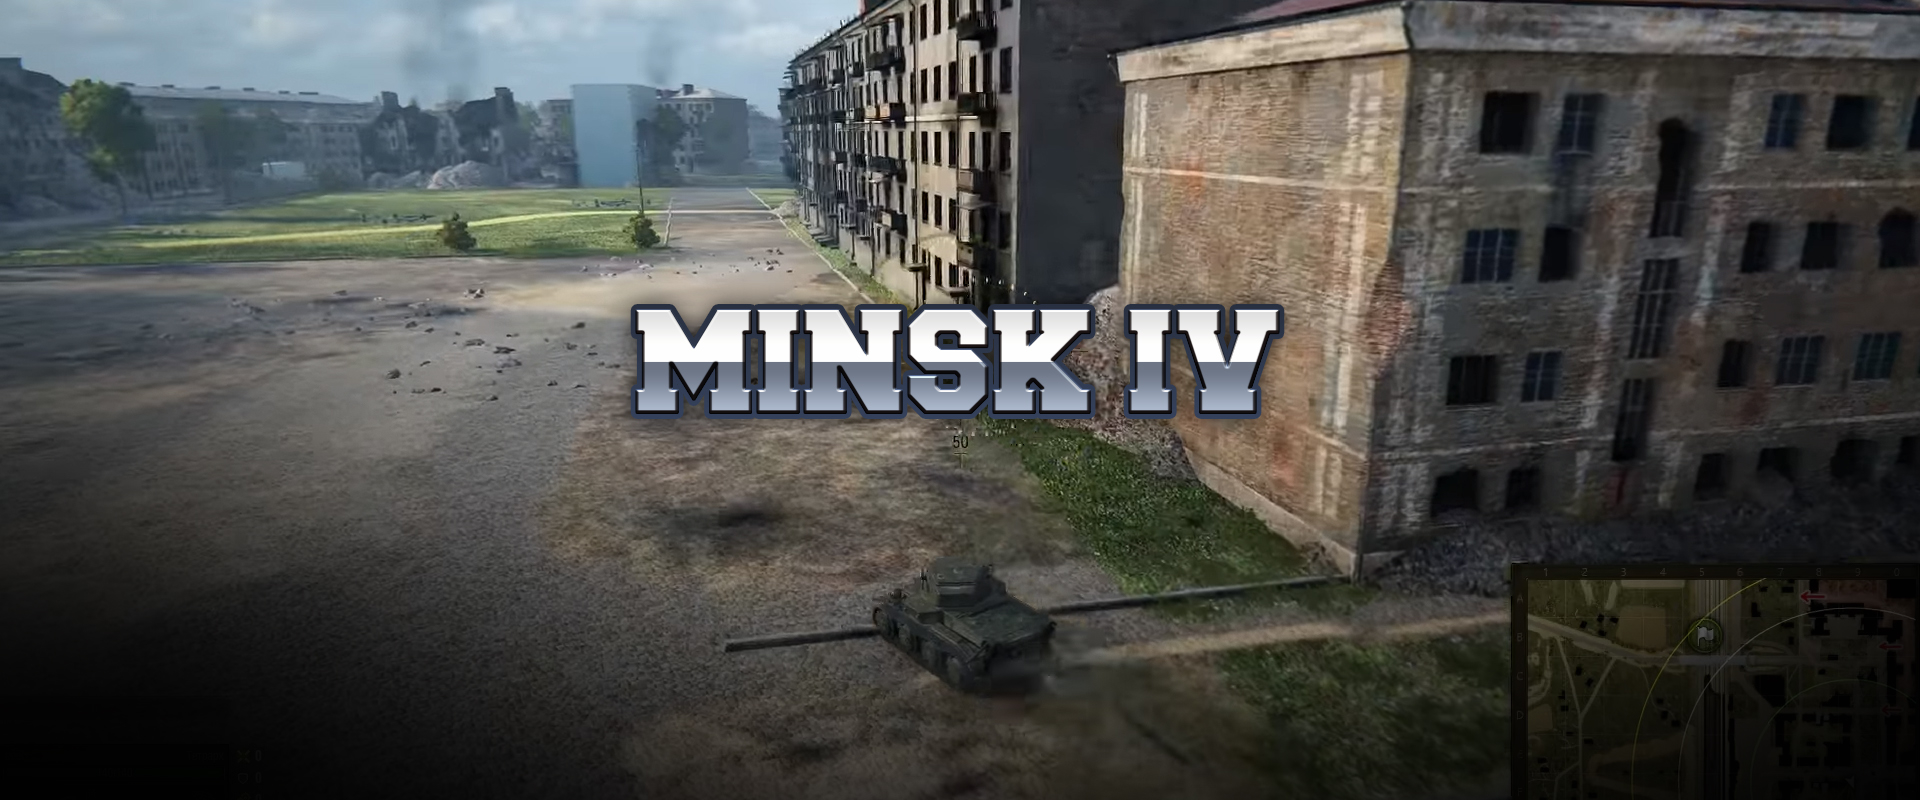 Minsk negyedik verziója!